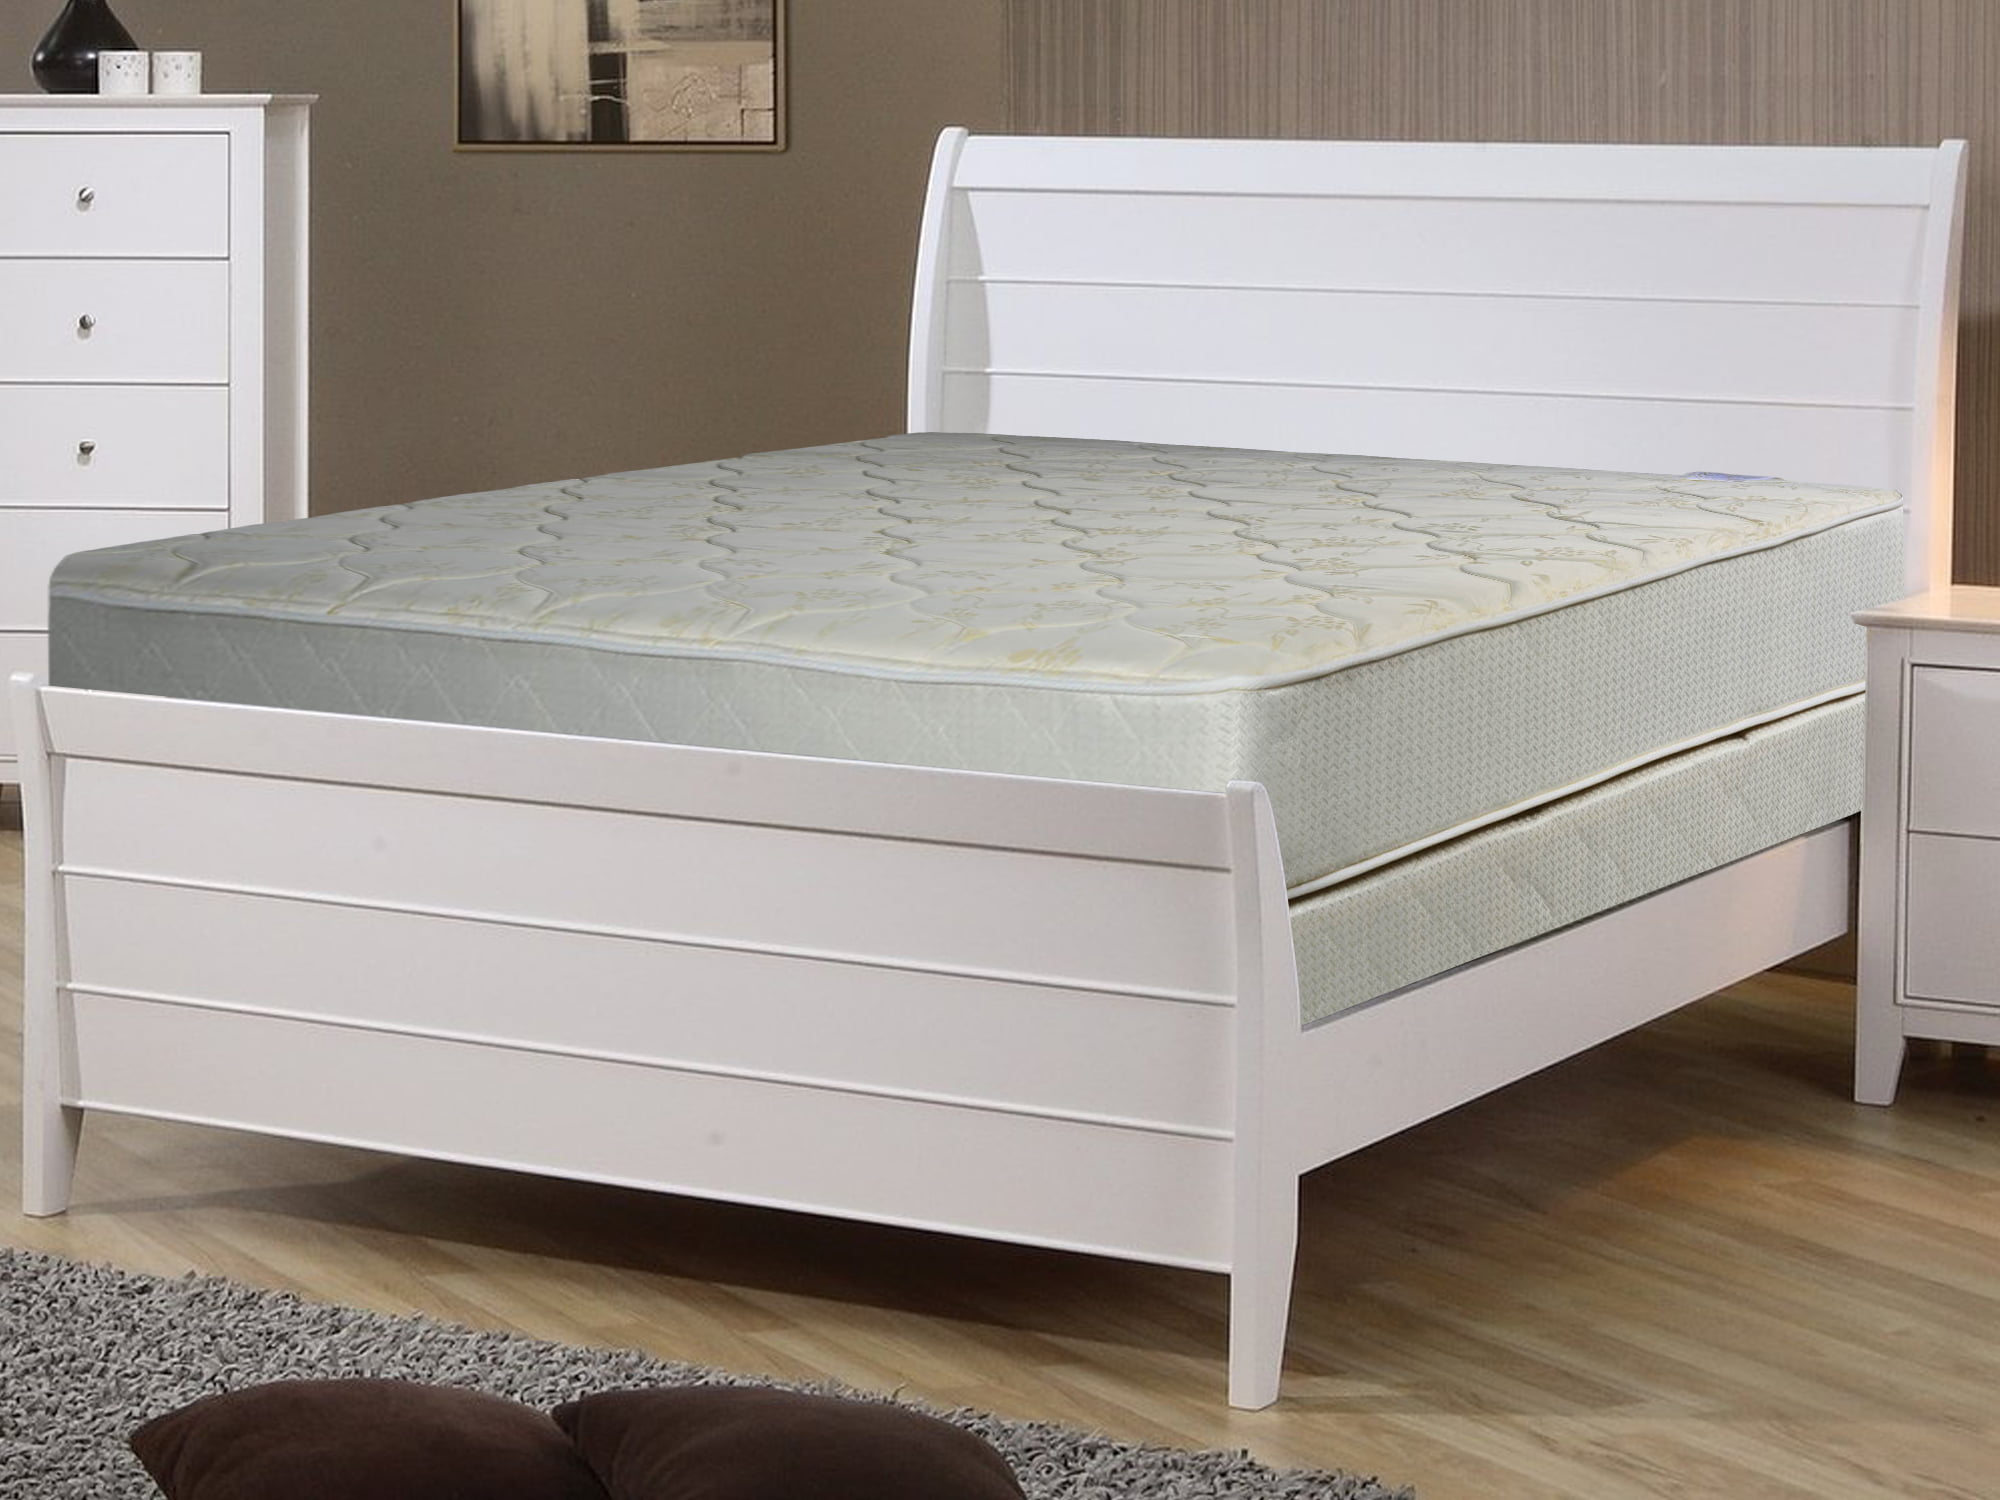 es907 9 inch mattress